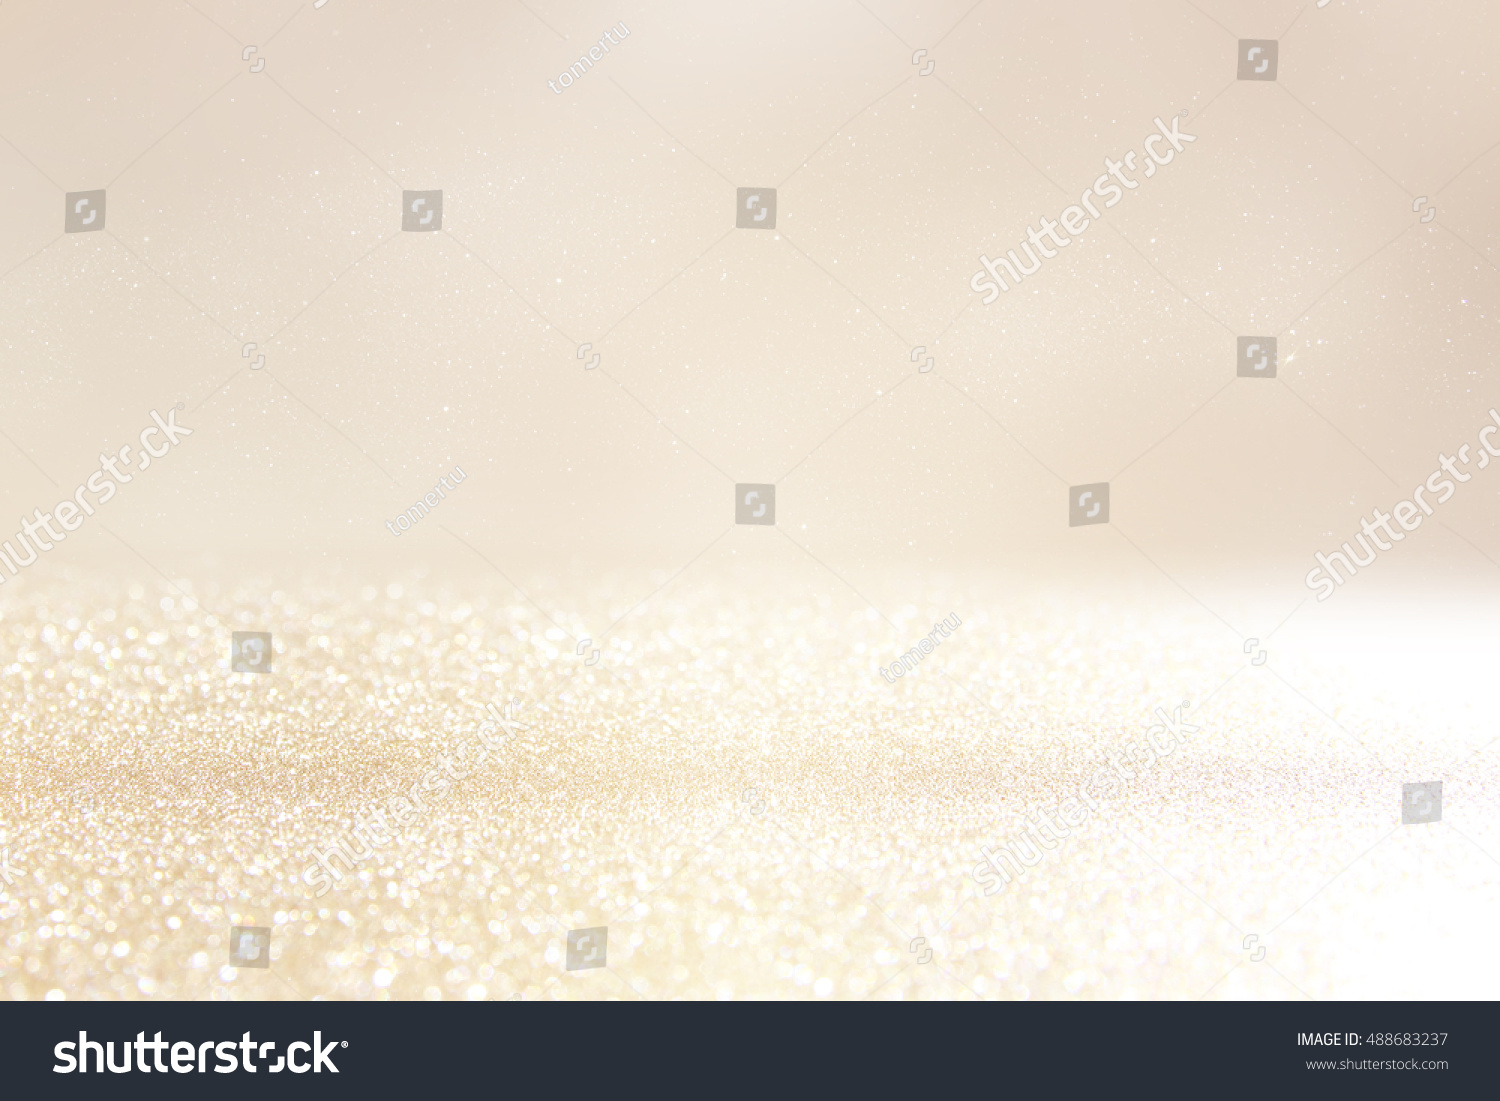 glitter vintage lights background. silver and gold. de-focused #488683237